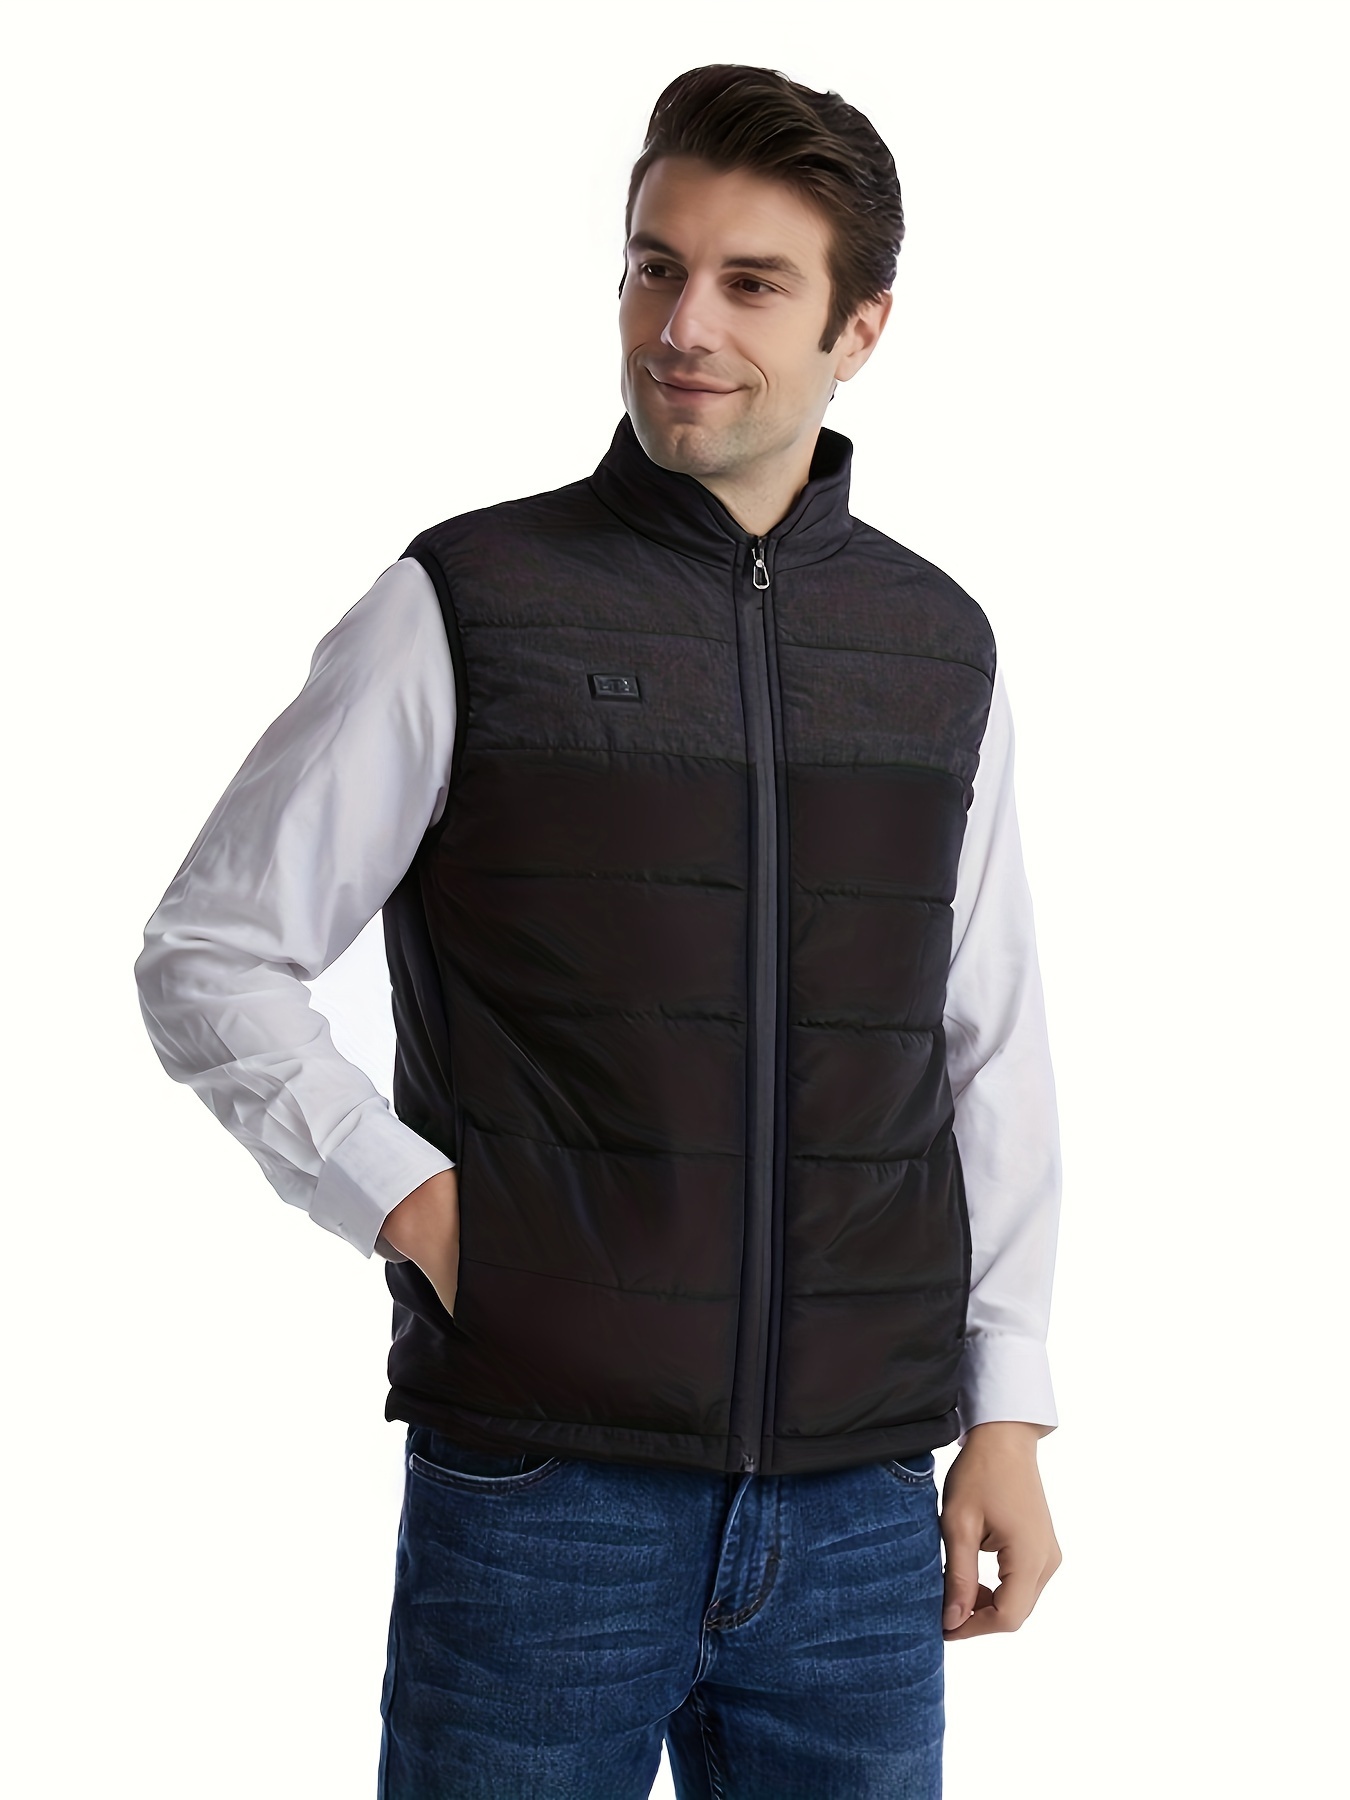 Chaleco calefactable para hombre y mujer, chaqueta calefactora con USB, ropa  térmica, chaleco de caza, chaqueta